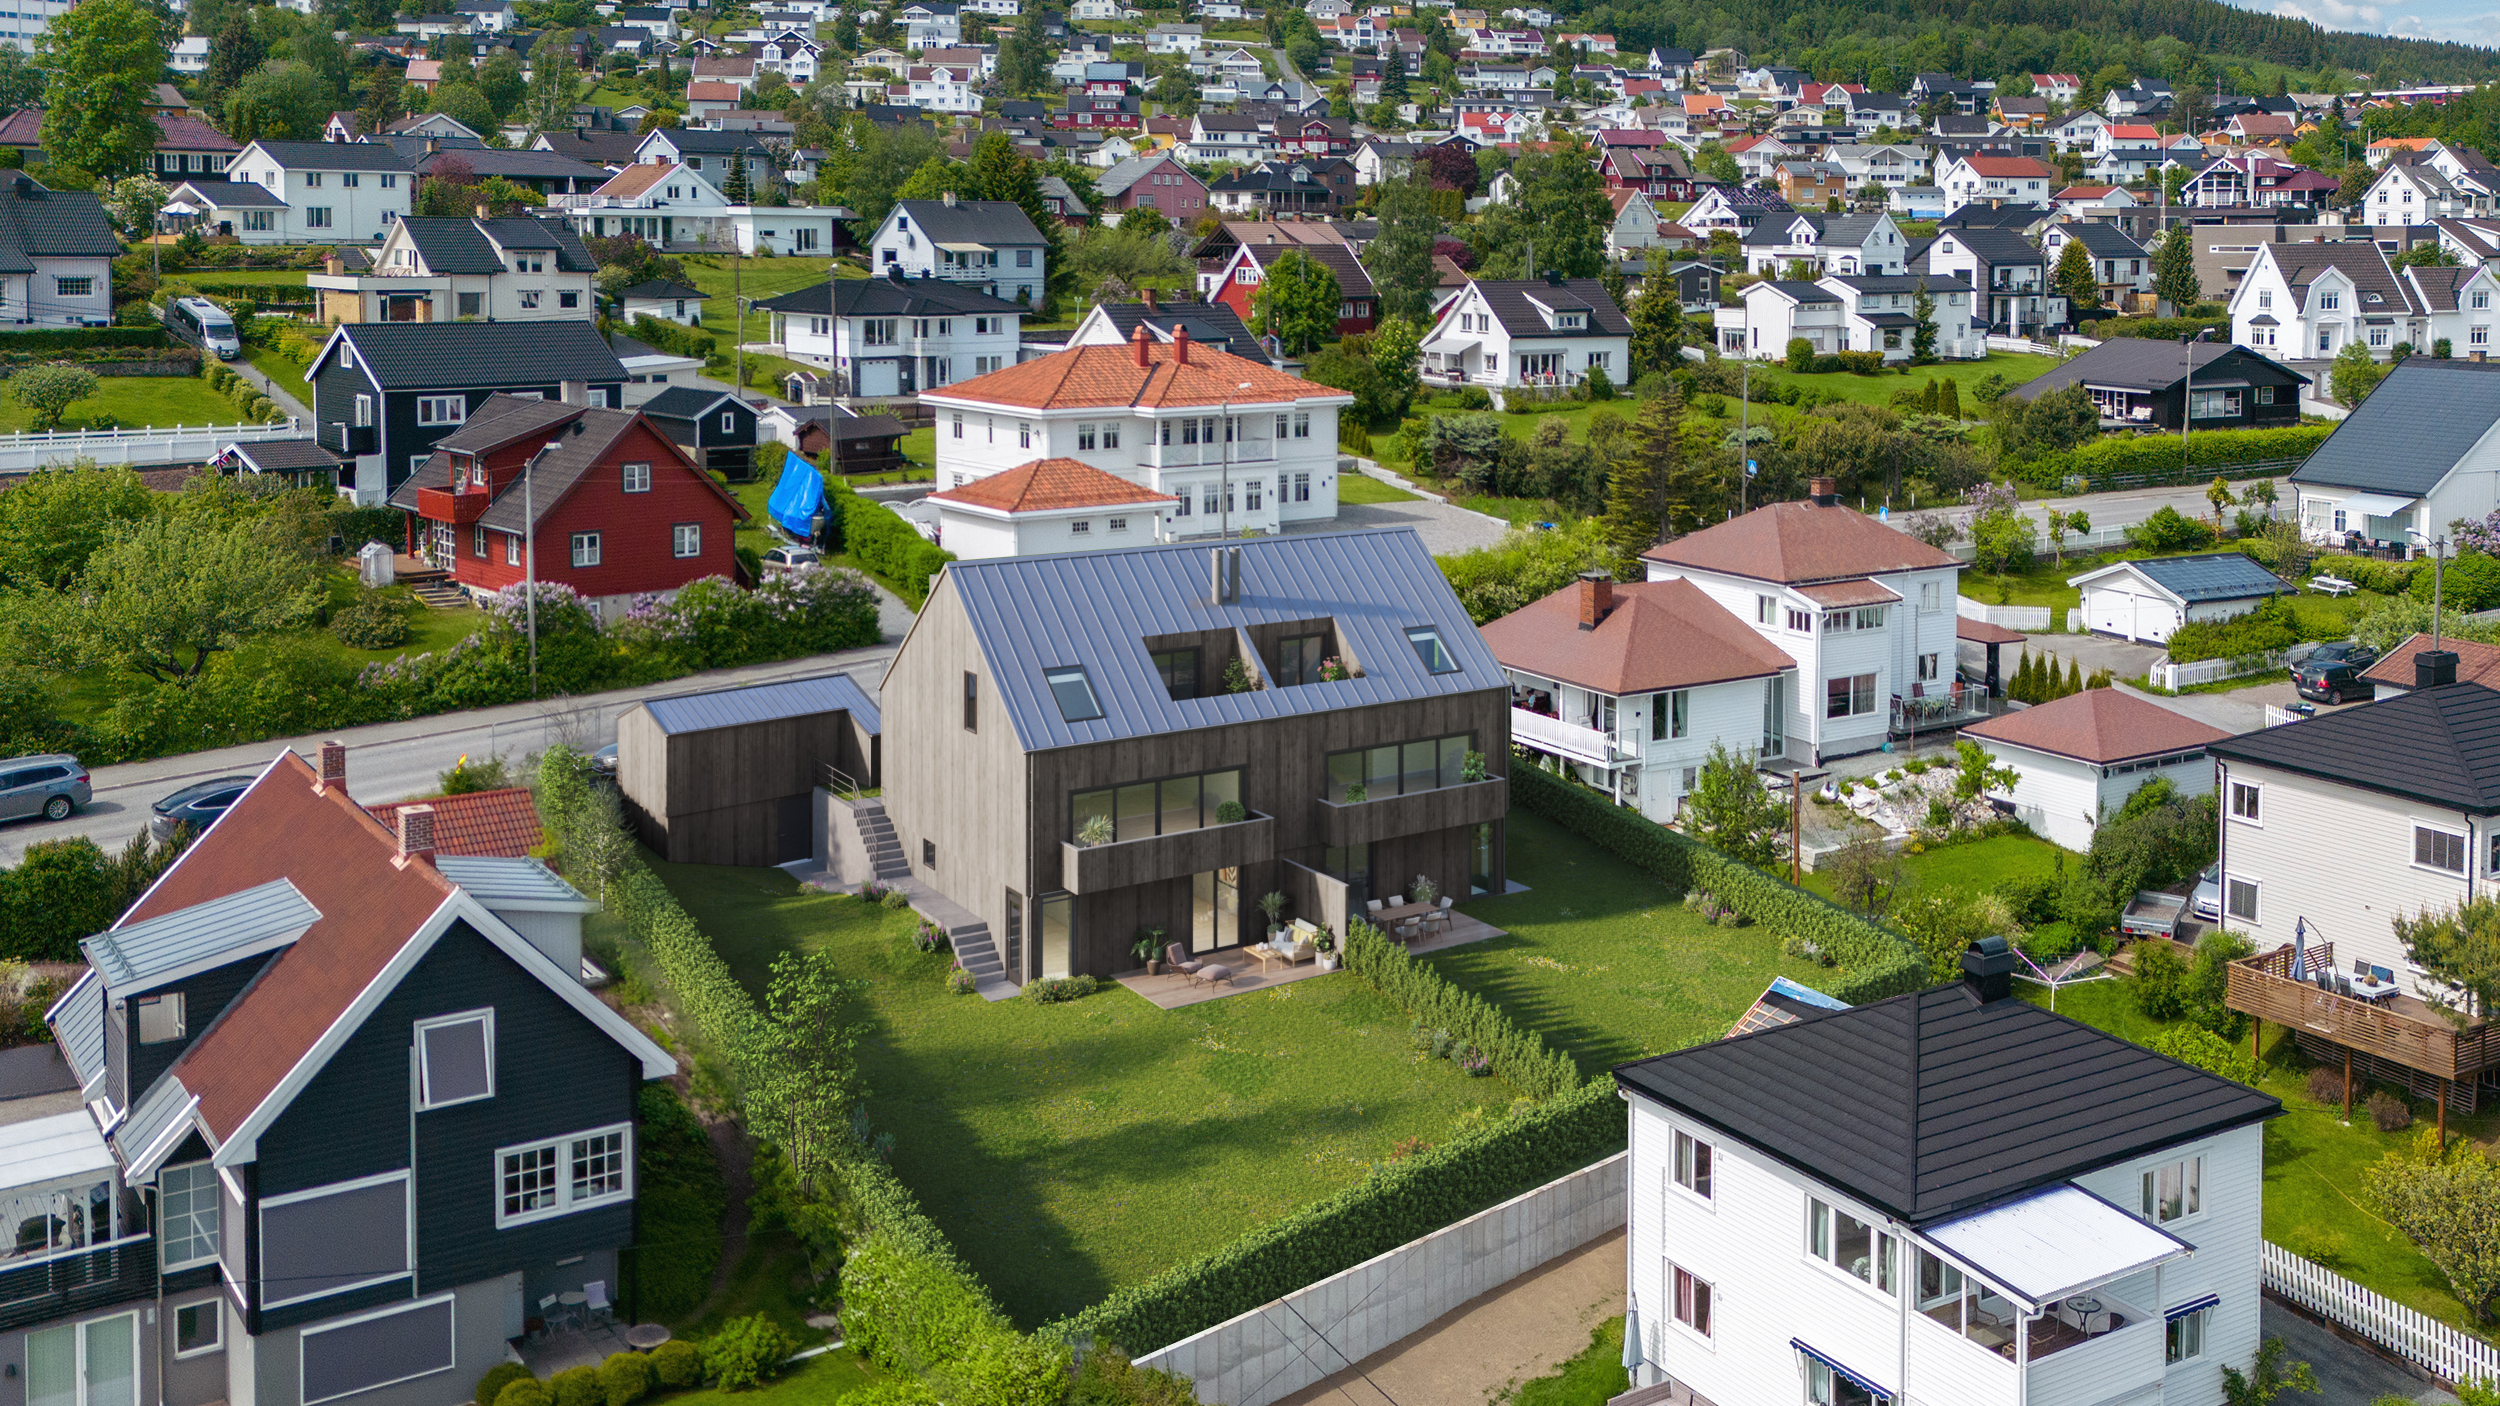 3D visualisering av eksteriør - Illustrasjon av bolig med terrasser i landlige omgivelser - grå kledning og morderne stil med fint uteområde